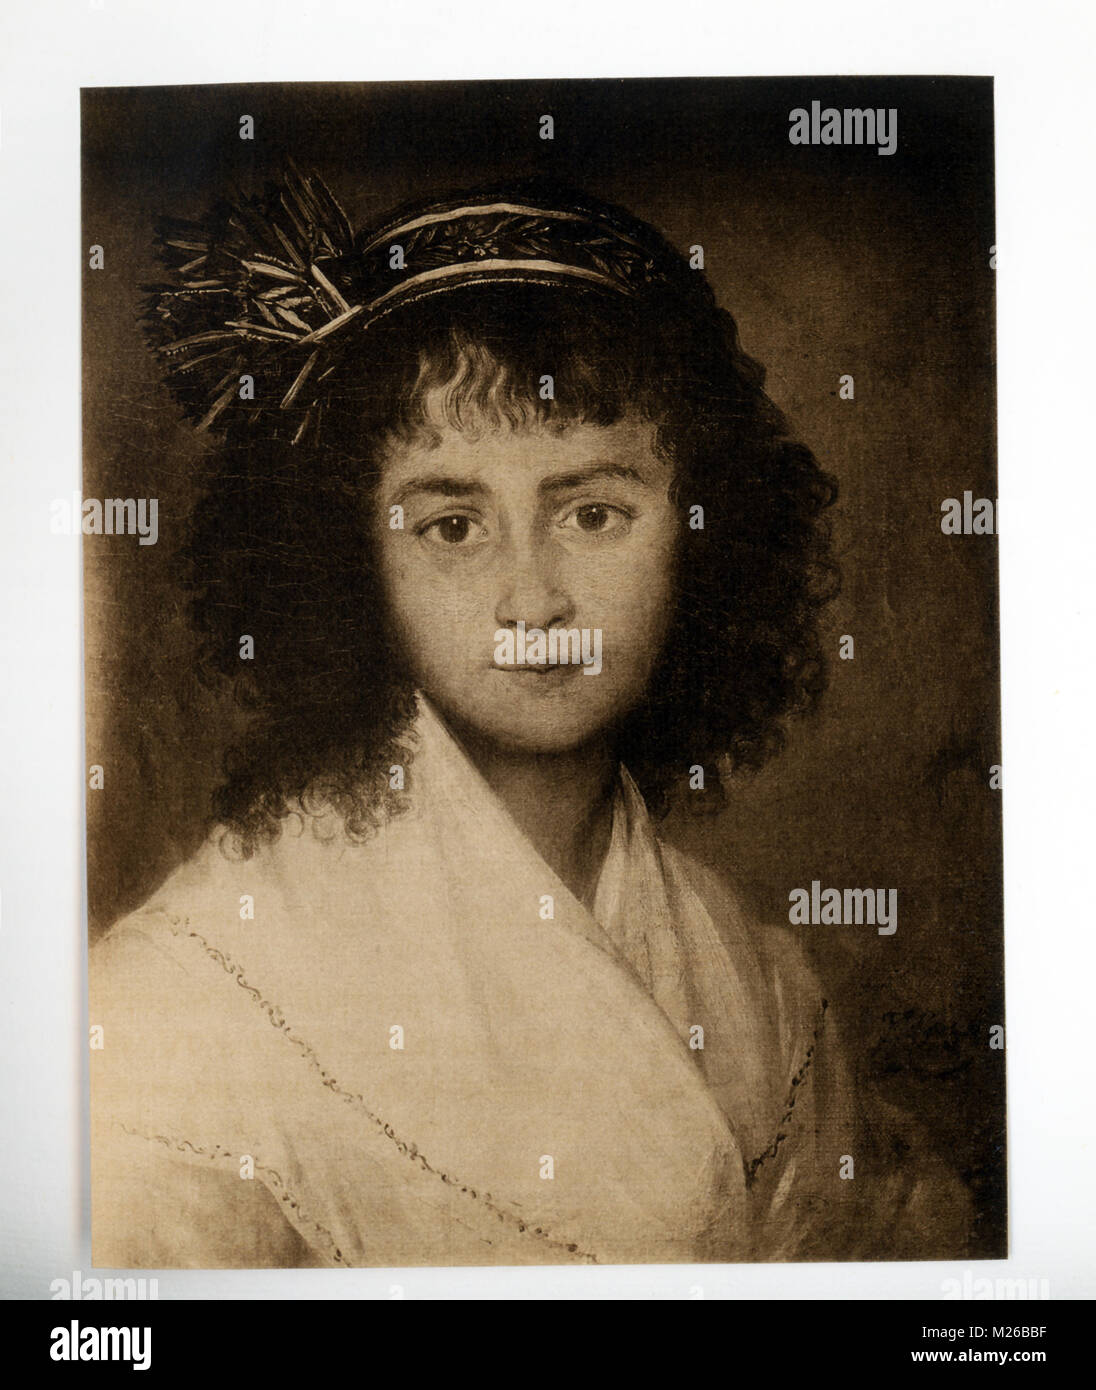 Francisco de Goya (1746-1828) fue un pintor y grabador español. Examinó los artistas españoles más importantes de la época, él es honrado como uno de los últimos de los viejos maestros y uno de los primeros modernos. Sus primeras pinturas eran optimistas y alegres, a medida que pasaron los años, sus obras se volvieron muy pesimista. Un reconocido retratista, Goya realizó este retrato de una joven chica española. Foto de stock